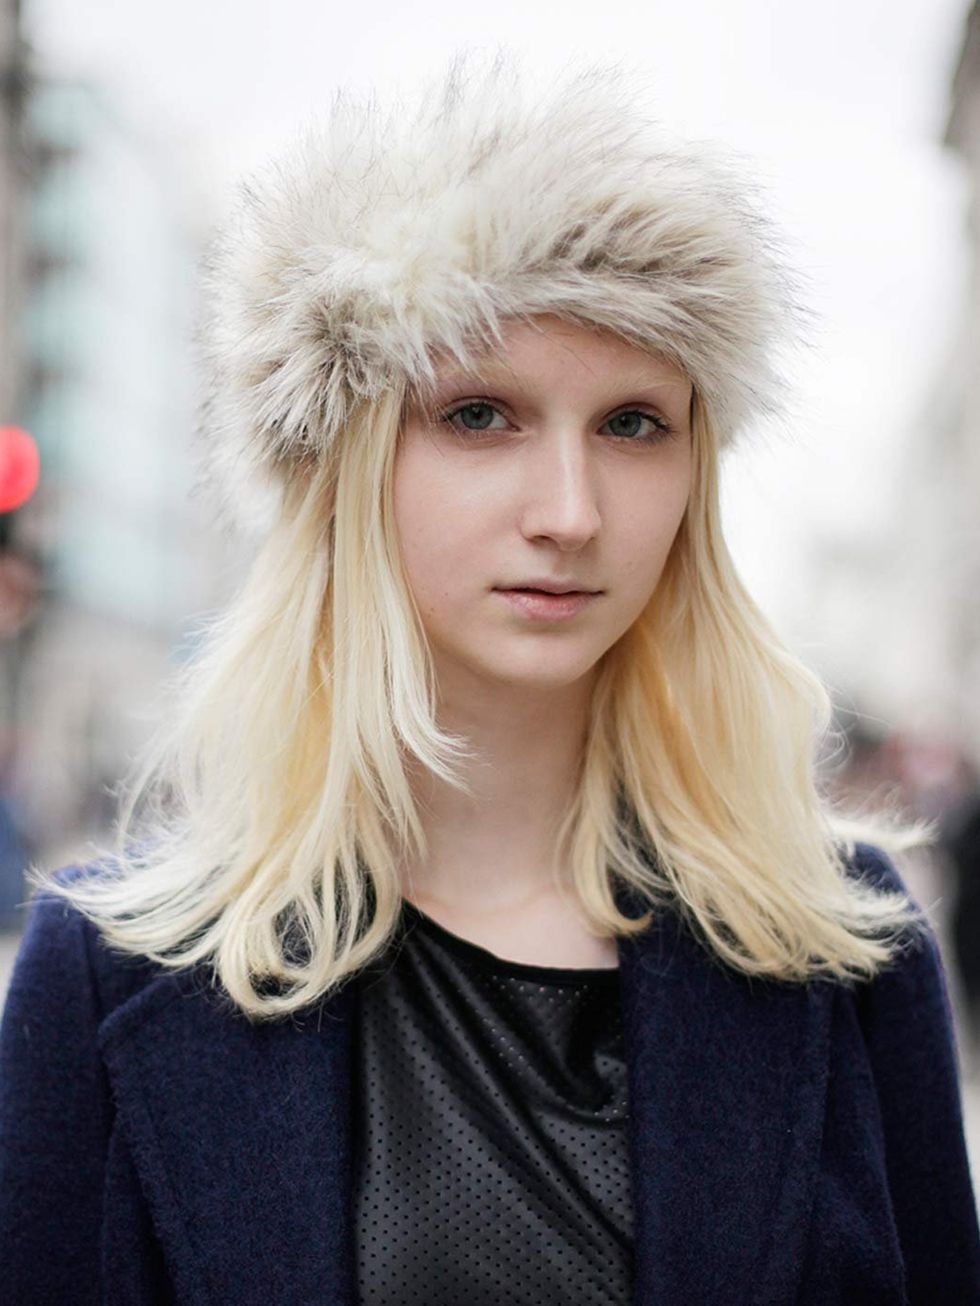 <p>Iris, 18, Model. Primark top and coat, New Look hat.</p>